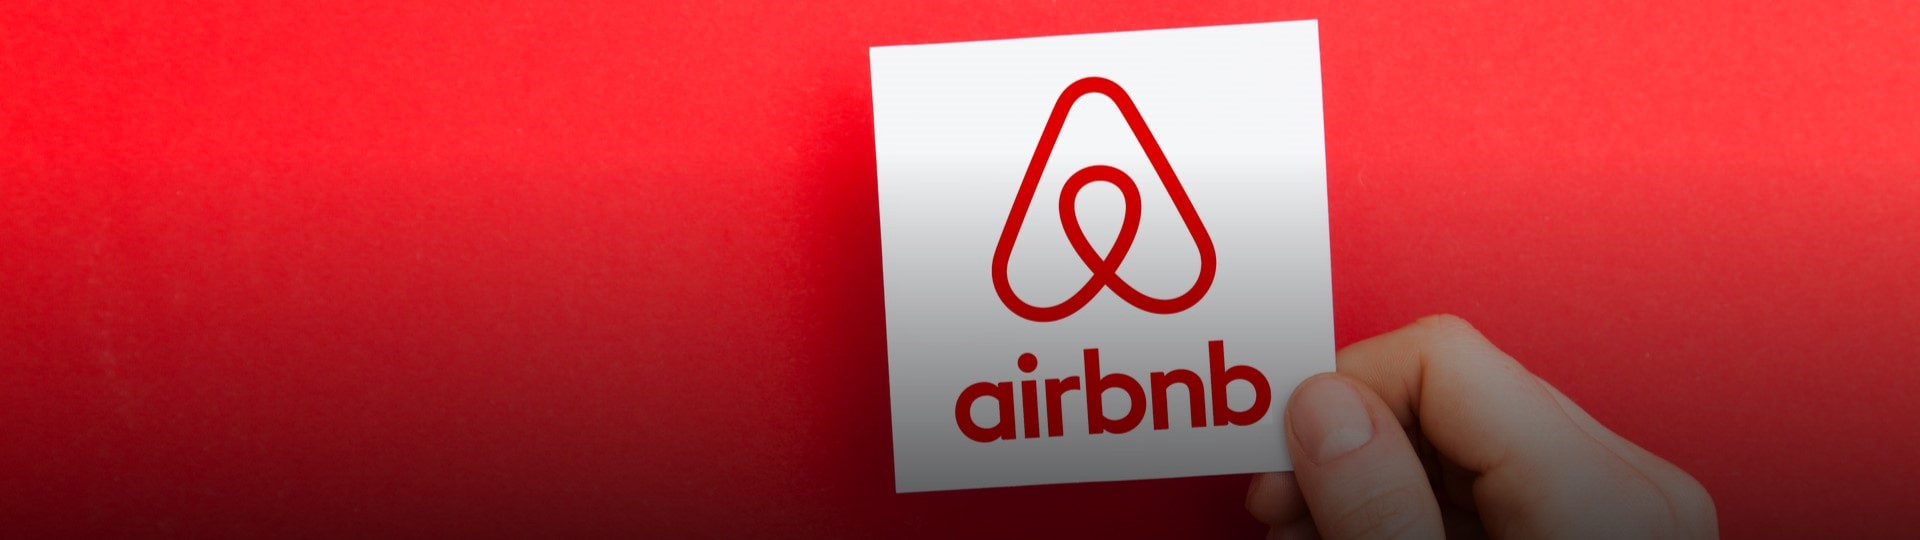 Hodnota Airbnb by mohla být až 35 miliard dolarů